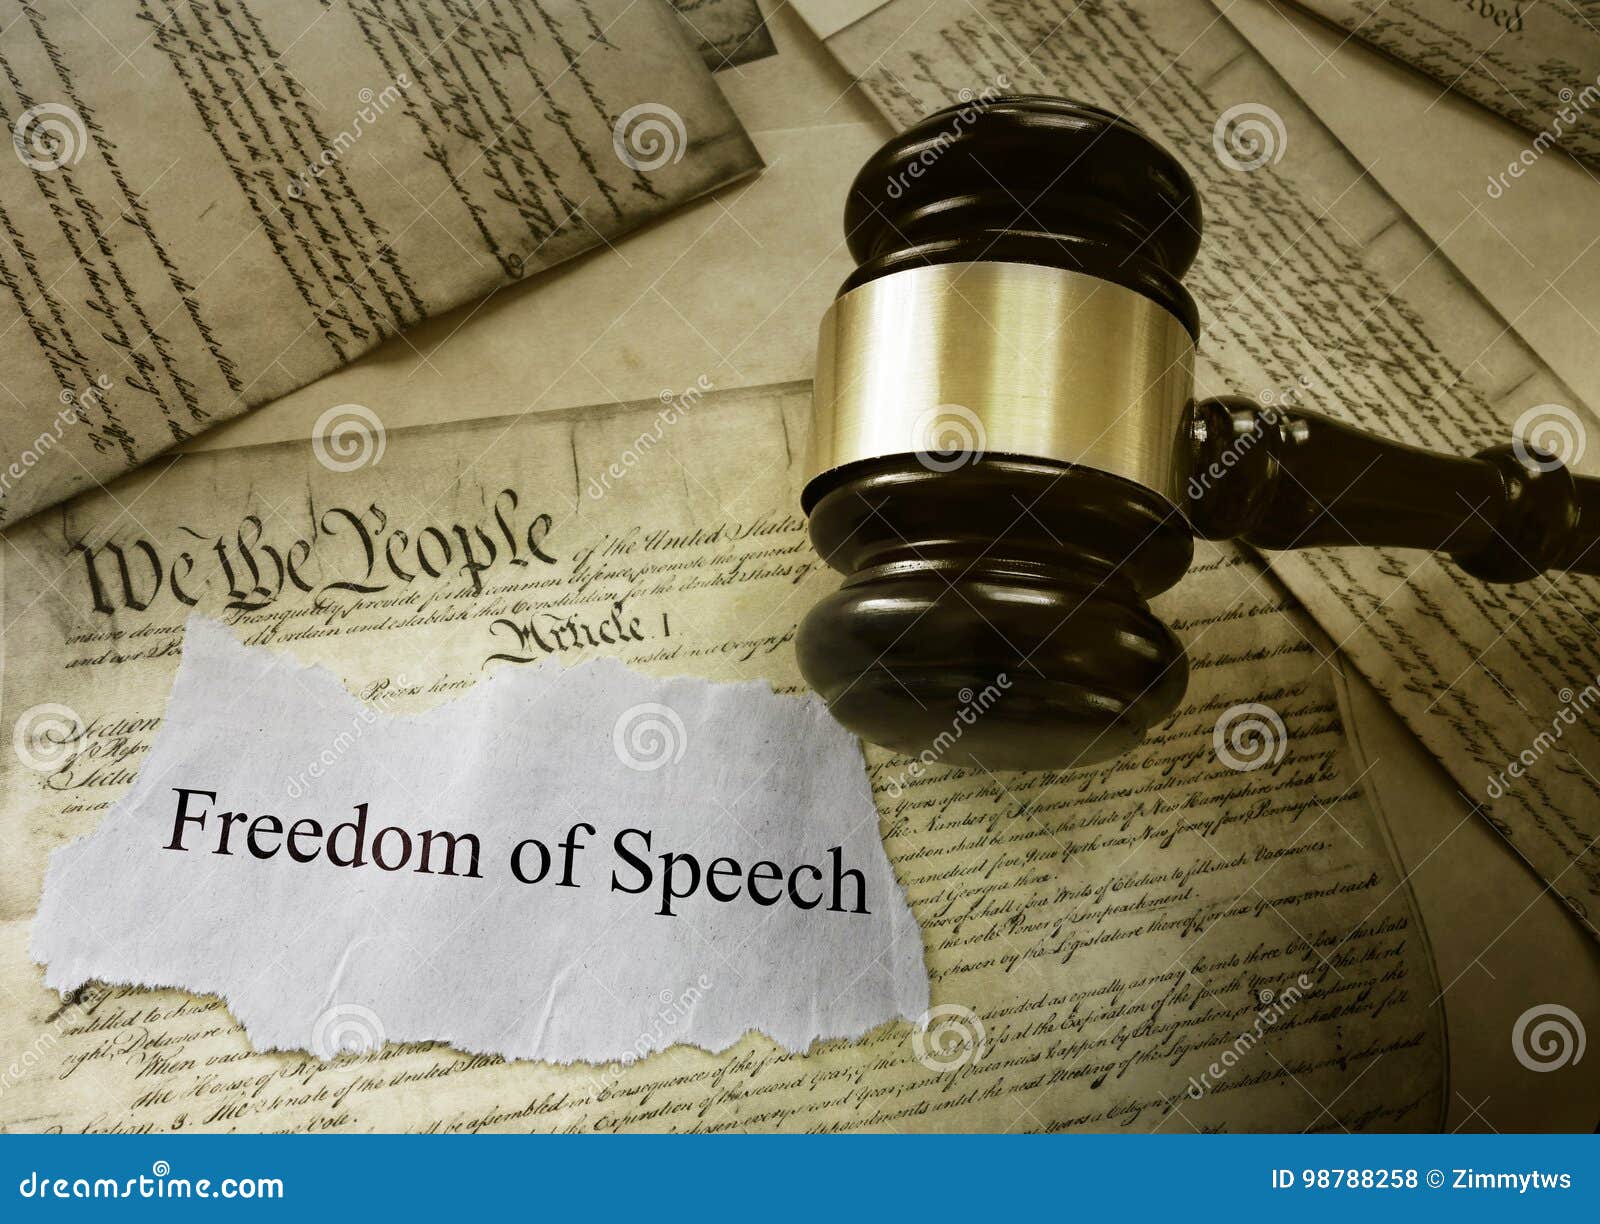 freedom of speech message